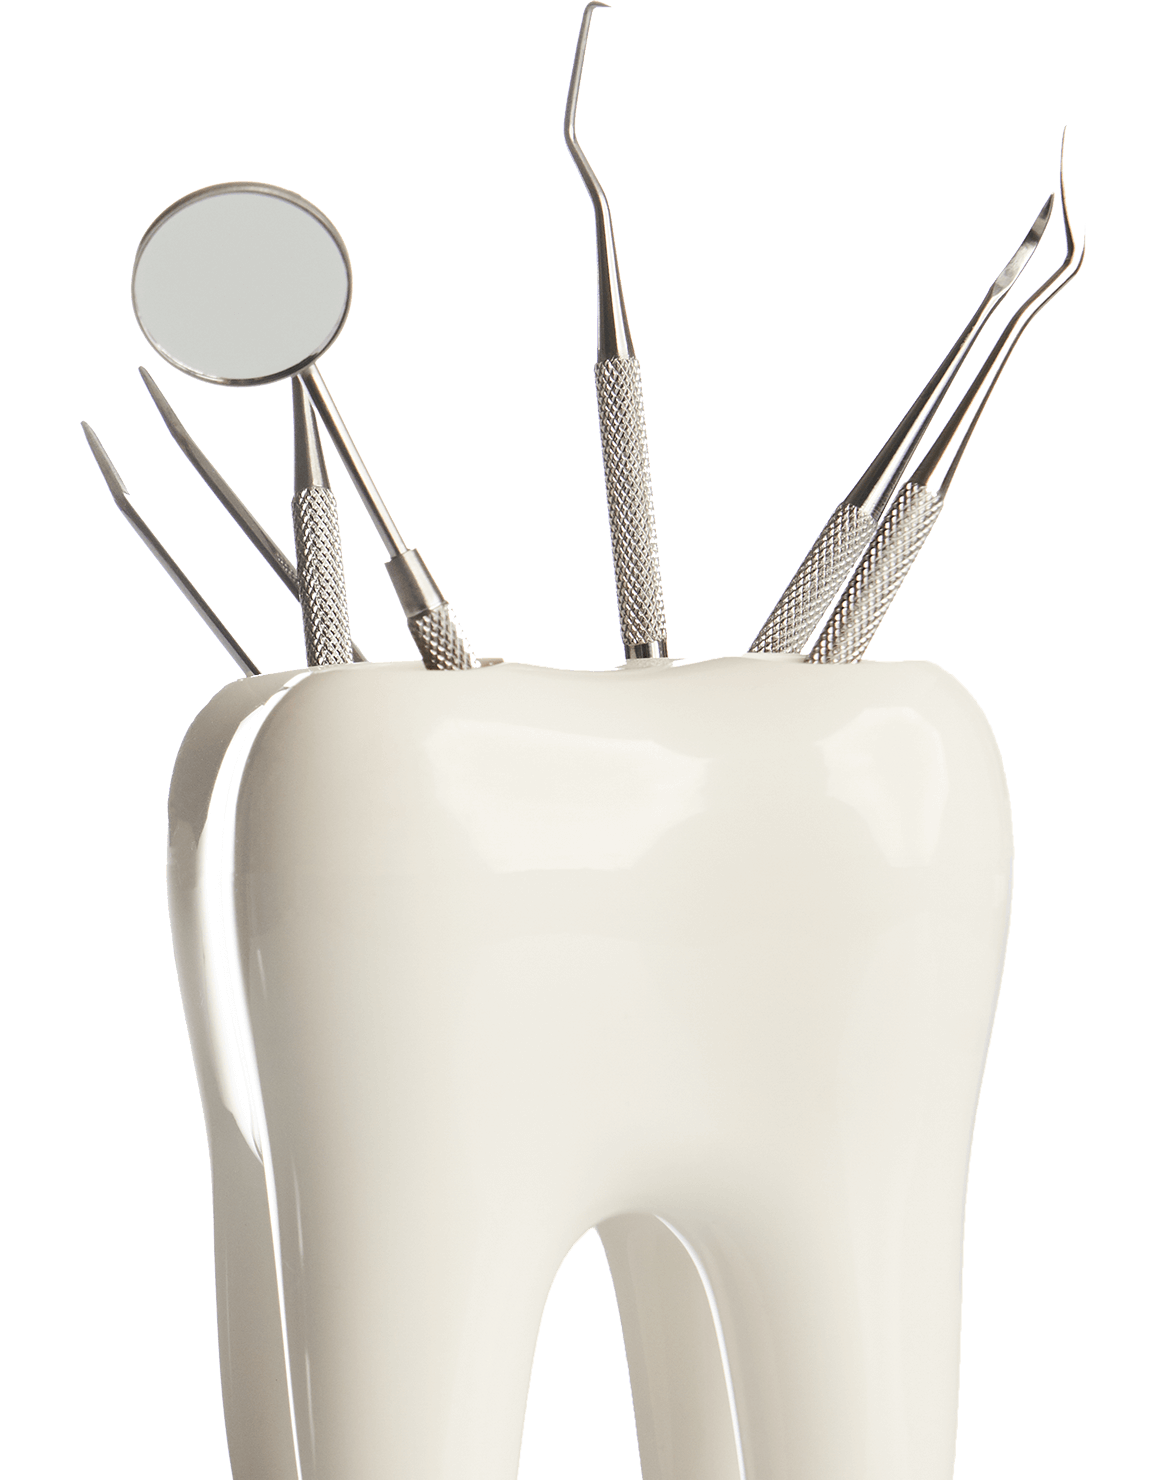 General Dentistry — Dentist Equipment in Randolph, VT